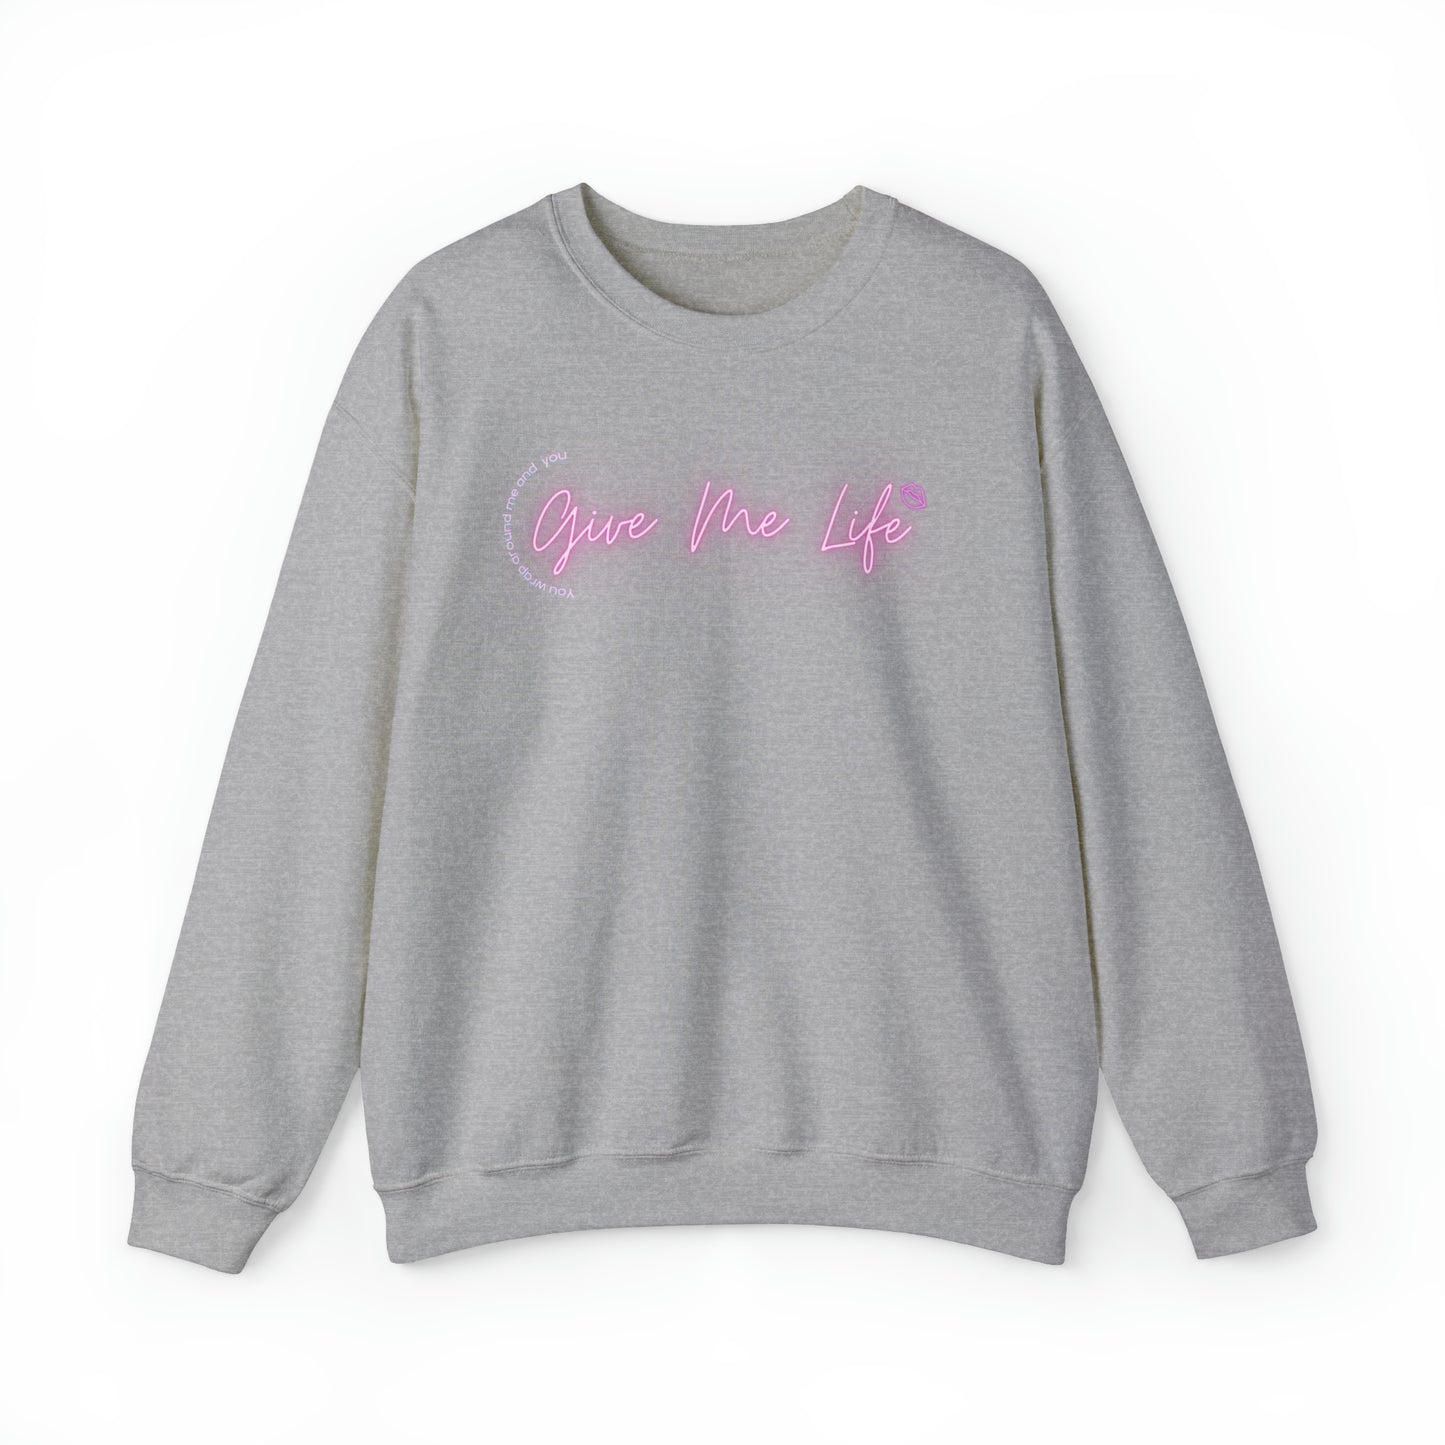 Give Me Life Sweatshirt